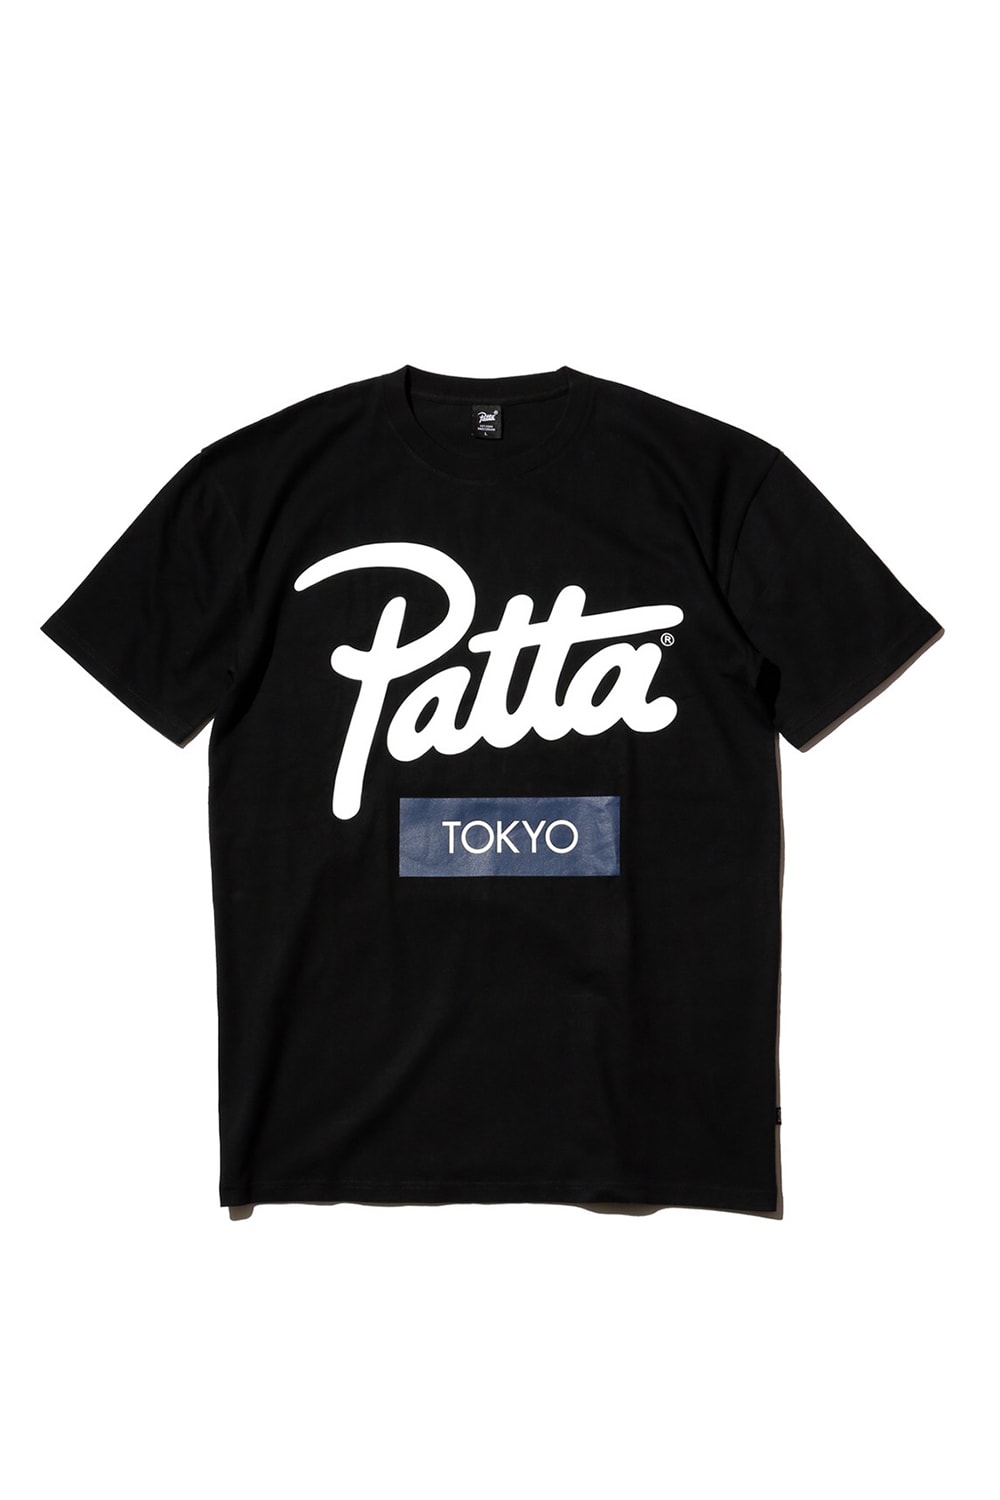 アジア凱旋中の Patta が BEAMS T HARAJUKU にポップアップストアをオープン 〈Patta〉x『BEAMS T』x 日本ブランドによるトリプルコラボなどファン垂涎のアイテムが登場 Kuumba LOOPWHEELER フーディ Tシャツ キャップ